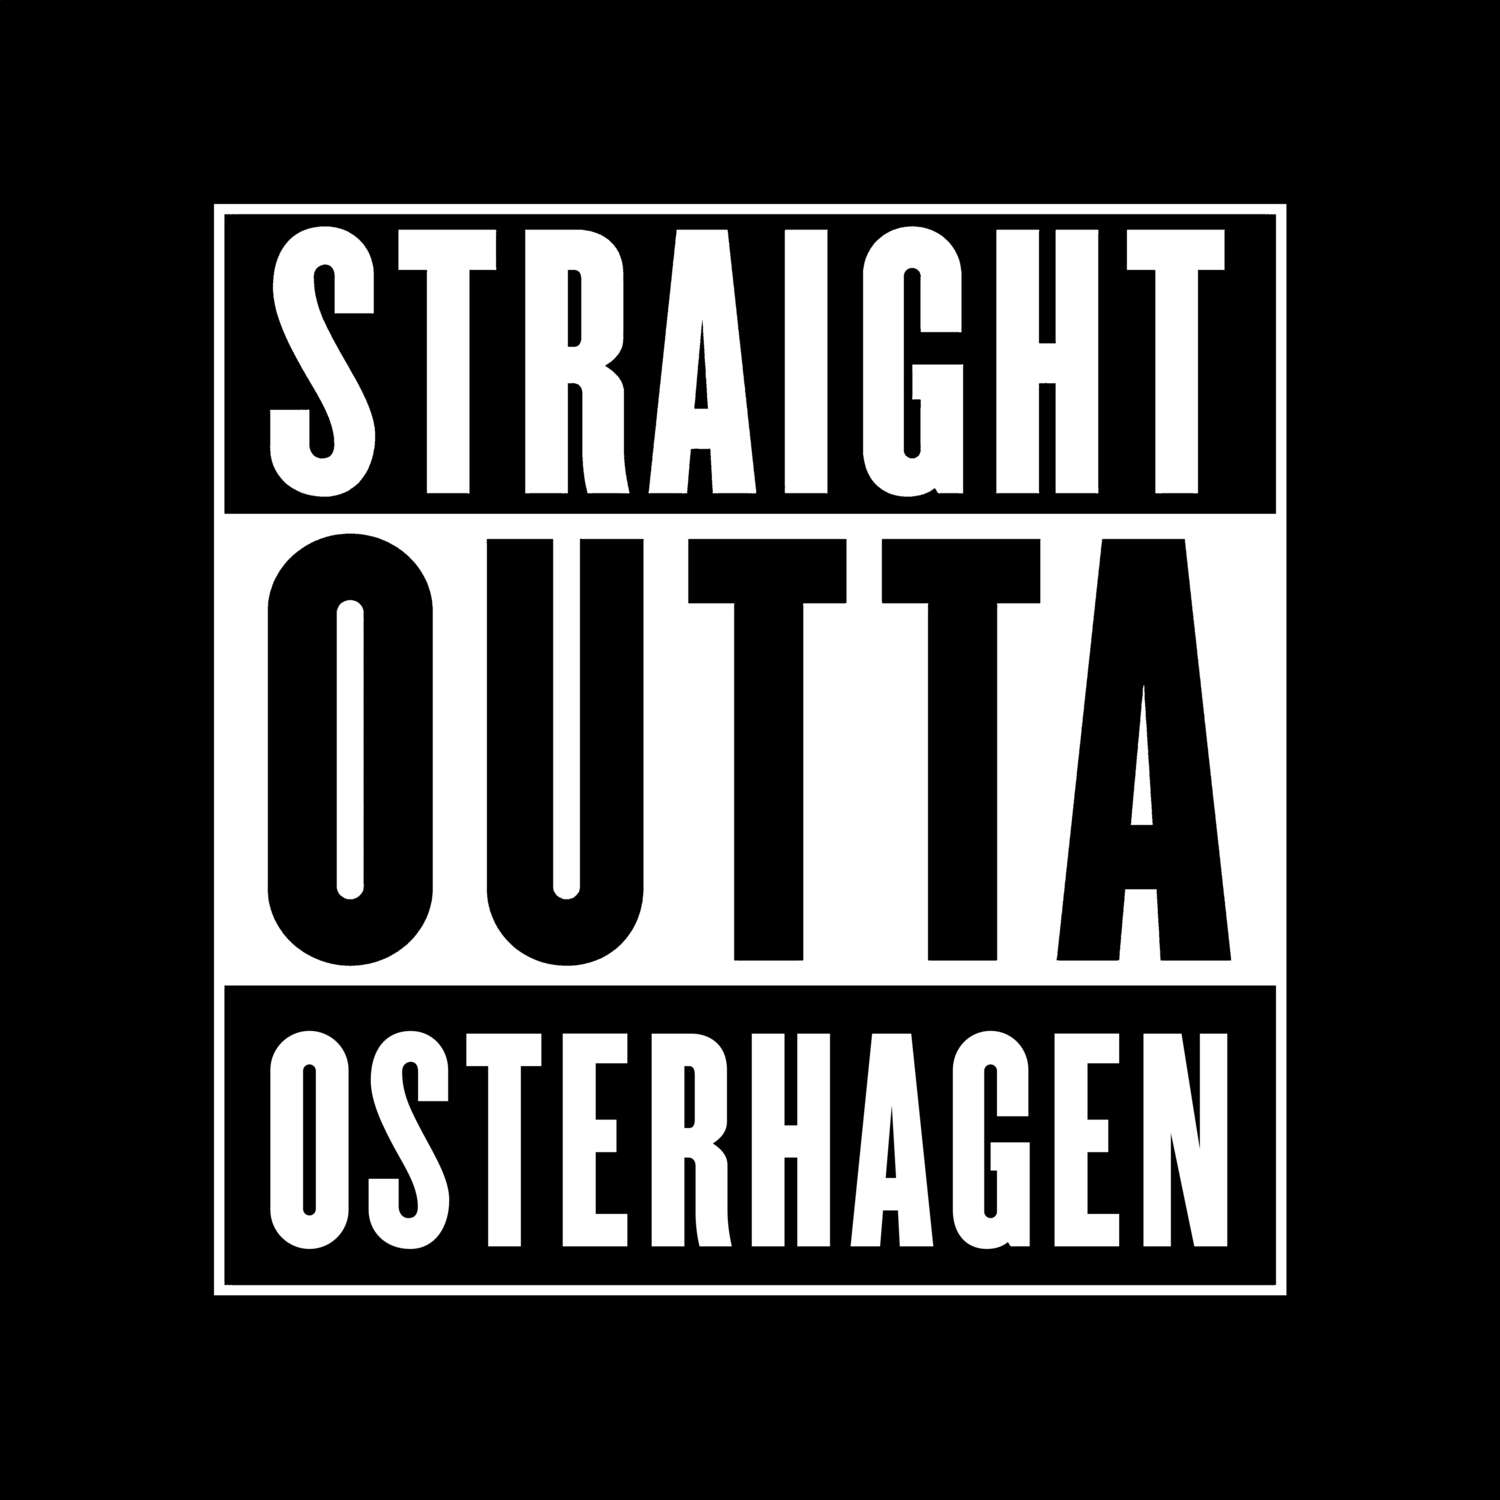 Osterhagen T-Shirt »Straight Outta«